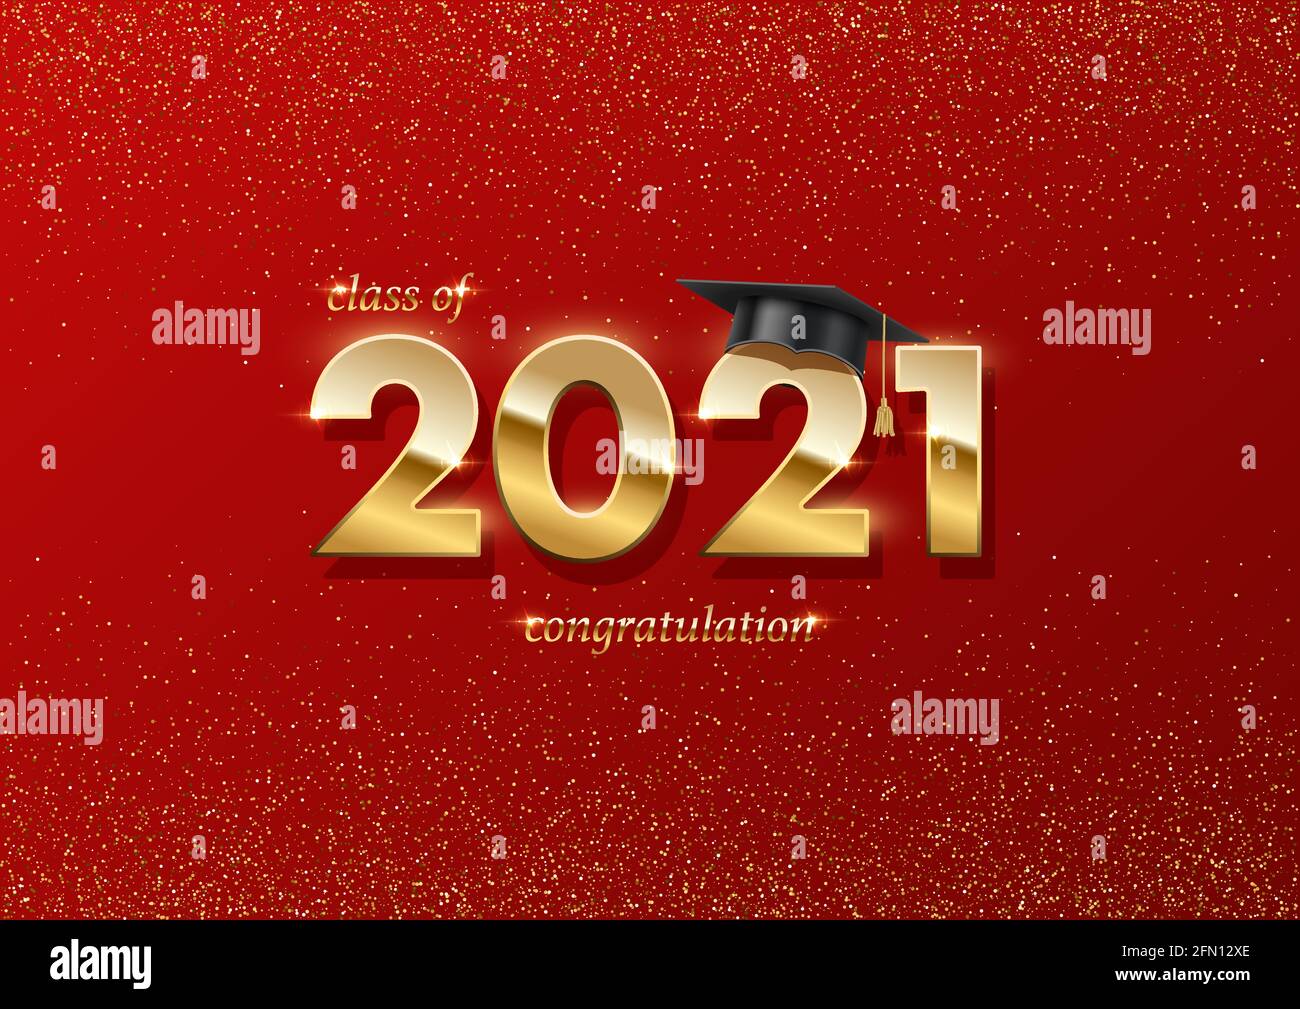 Banner zur Abschlussfeier 2021. Preiskonzept mit akademischem Hut, goldenen Zahlen und Text auf rotem Hintergrund mit goldenem Glitzer Stock Vektor